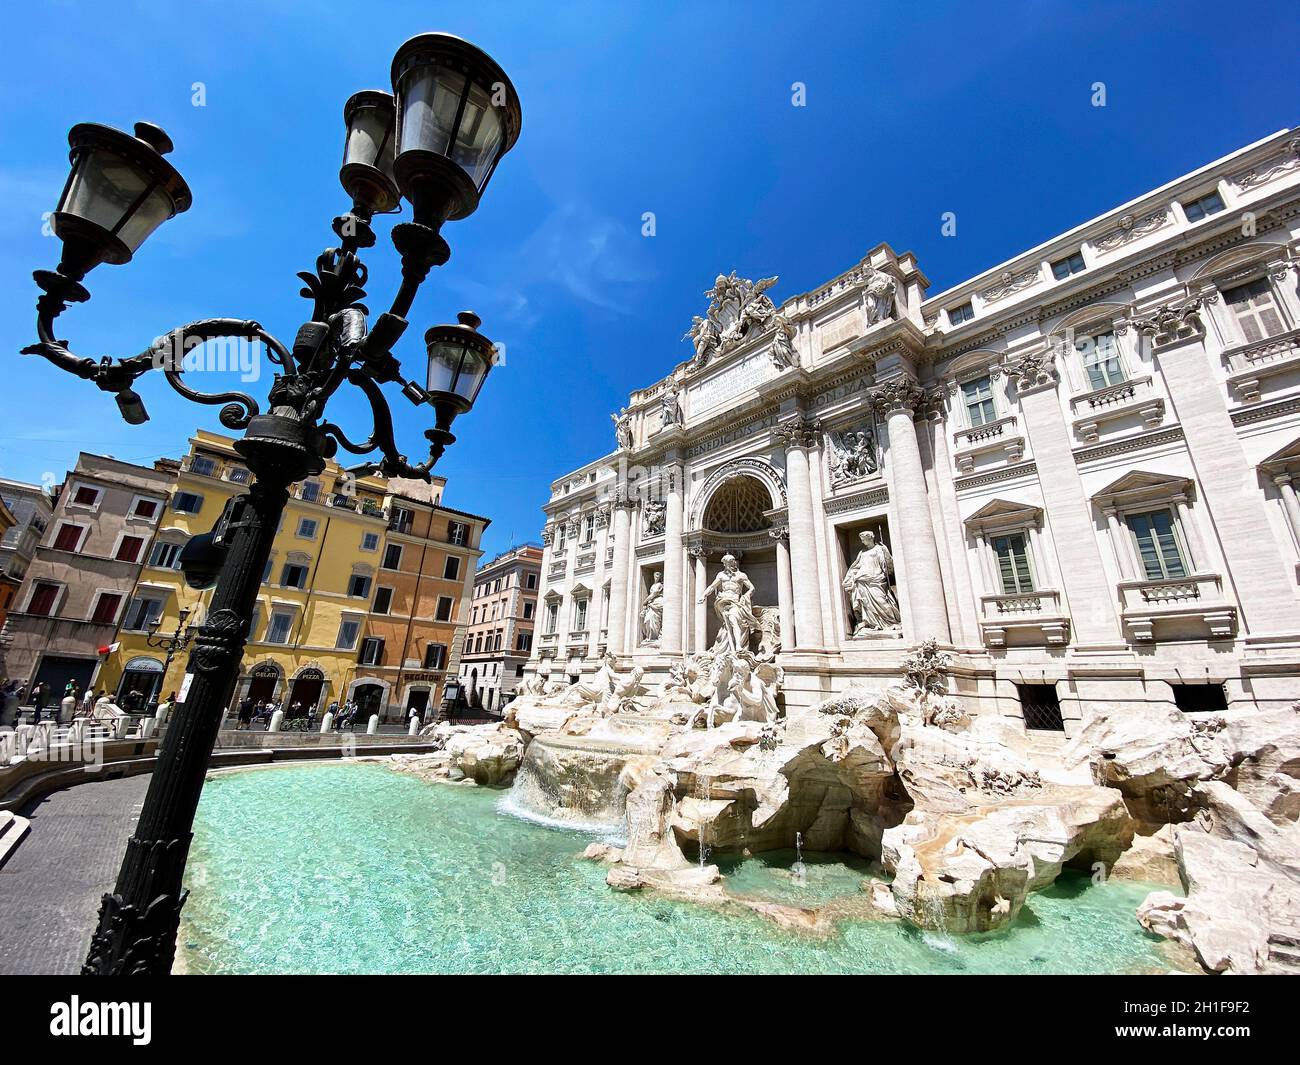 Roma, Italia, 25 maggio 2020: La Fontana di Trevi a Roma con i primi turisti dopo il blocco dovuto alla pandemia del coronavirus. Accesso al supporto Foto Stock